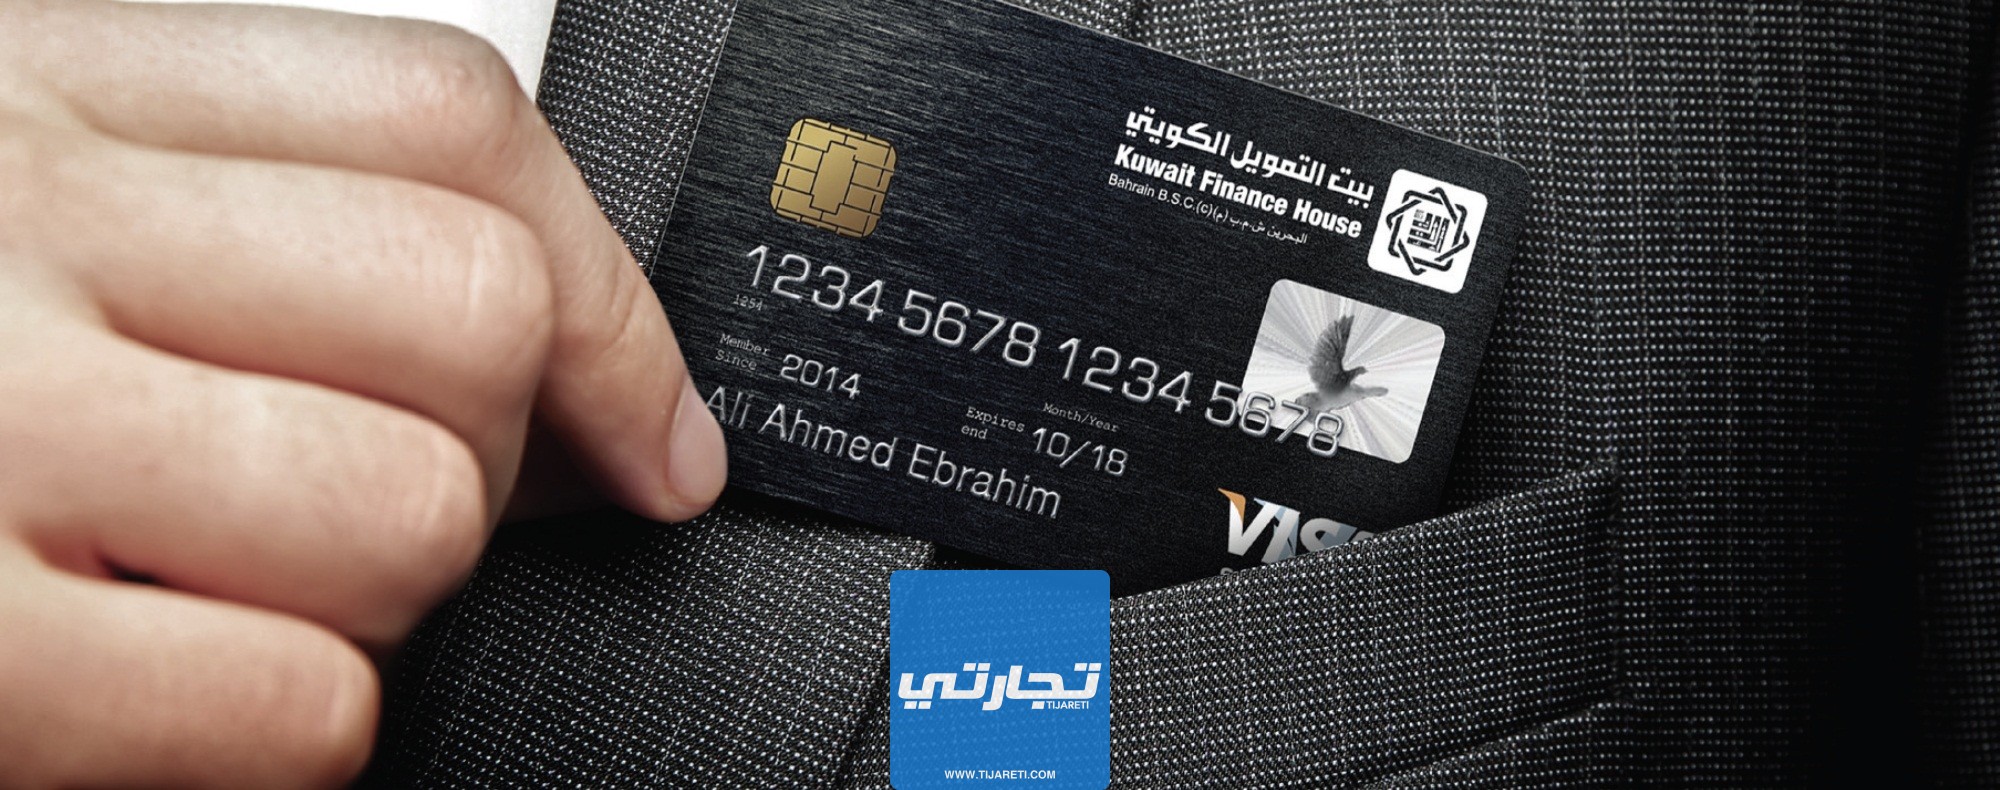 فيزا Signature من أنواع بطاقات بيت التمويل الكويتي